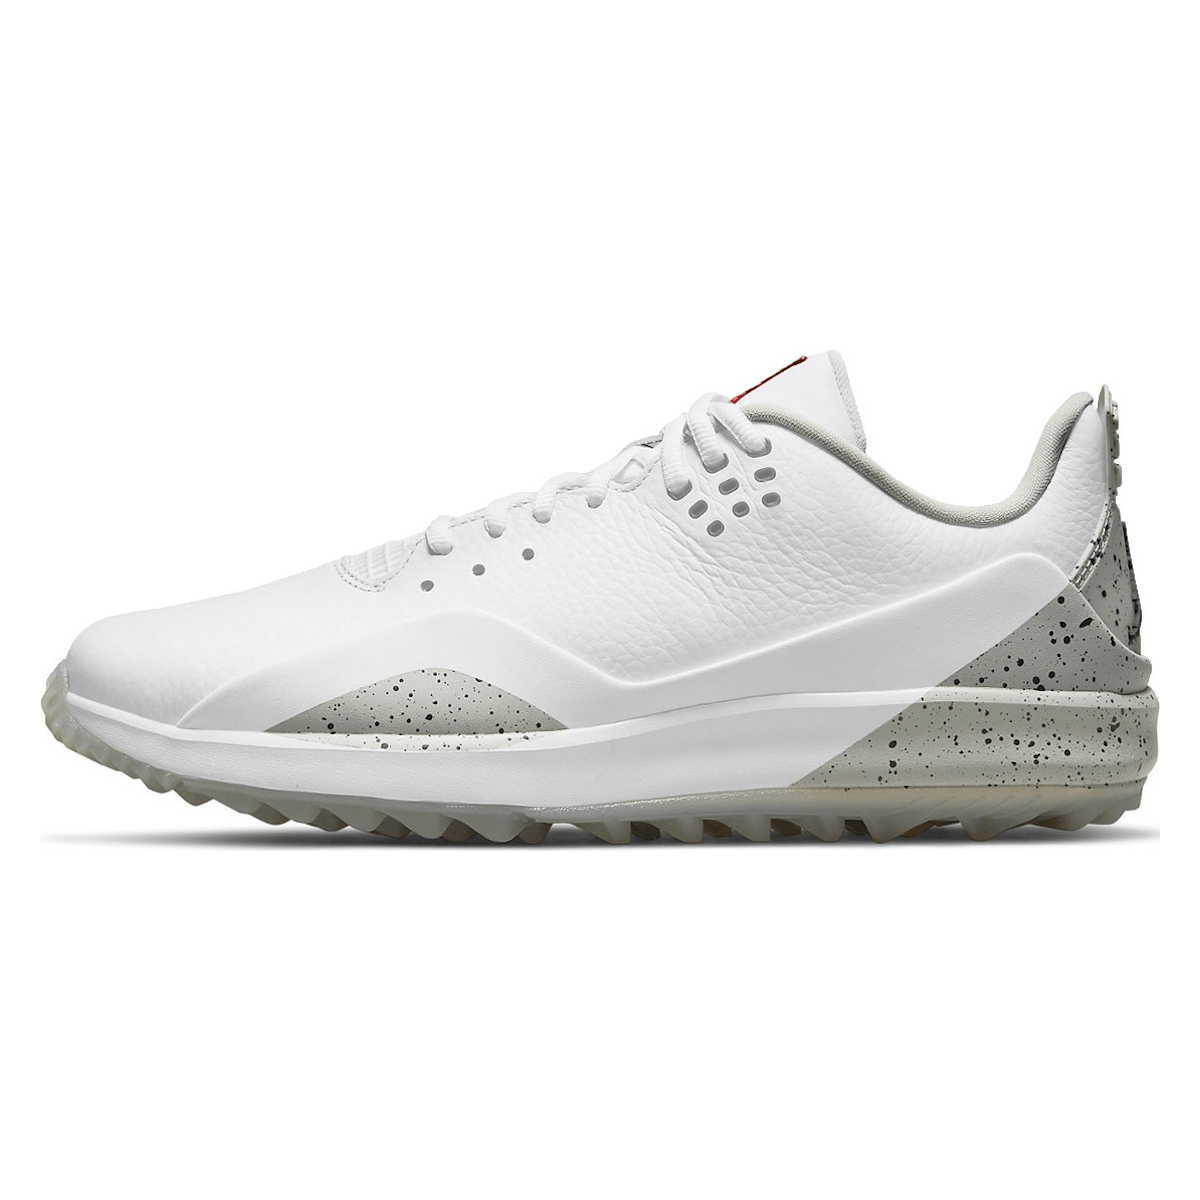 Jordan ADG 3 Golf White Cement